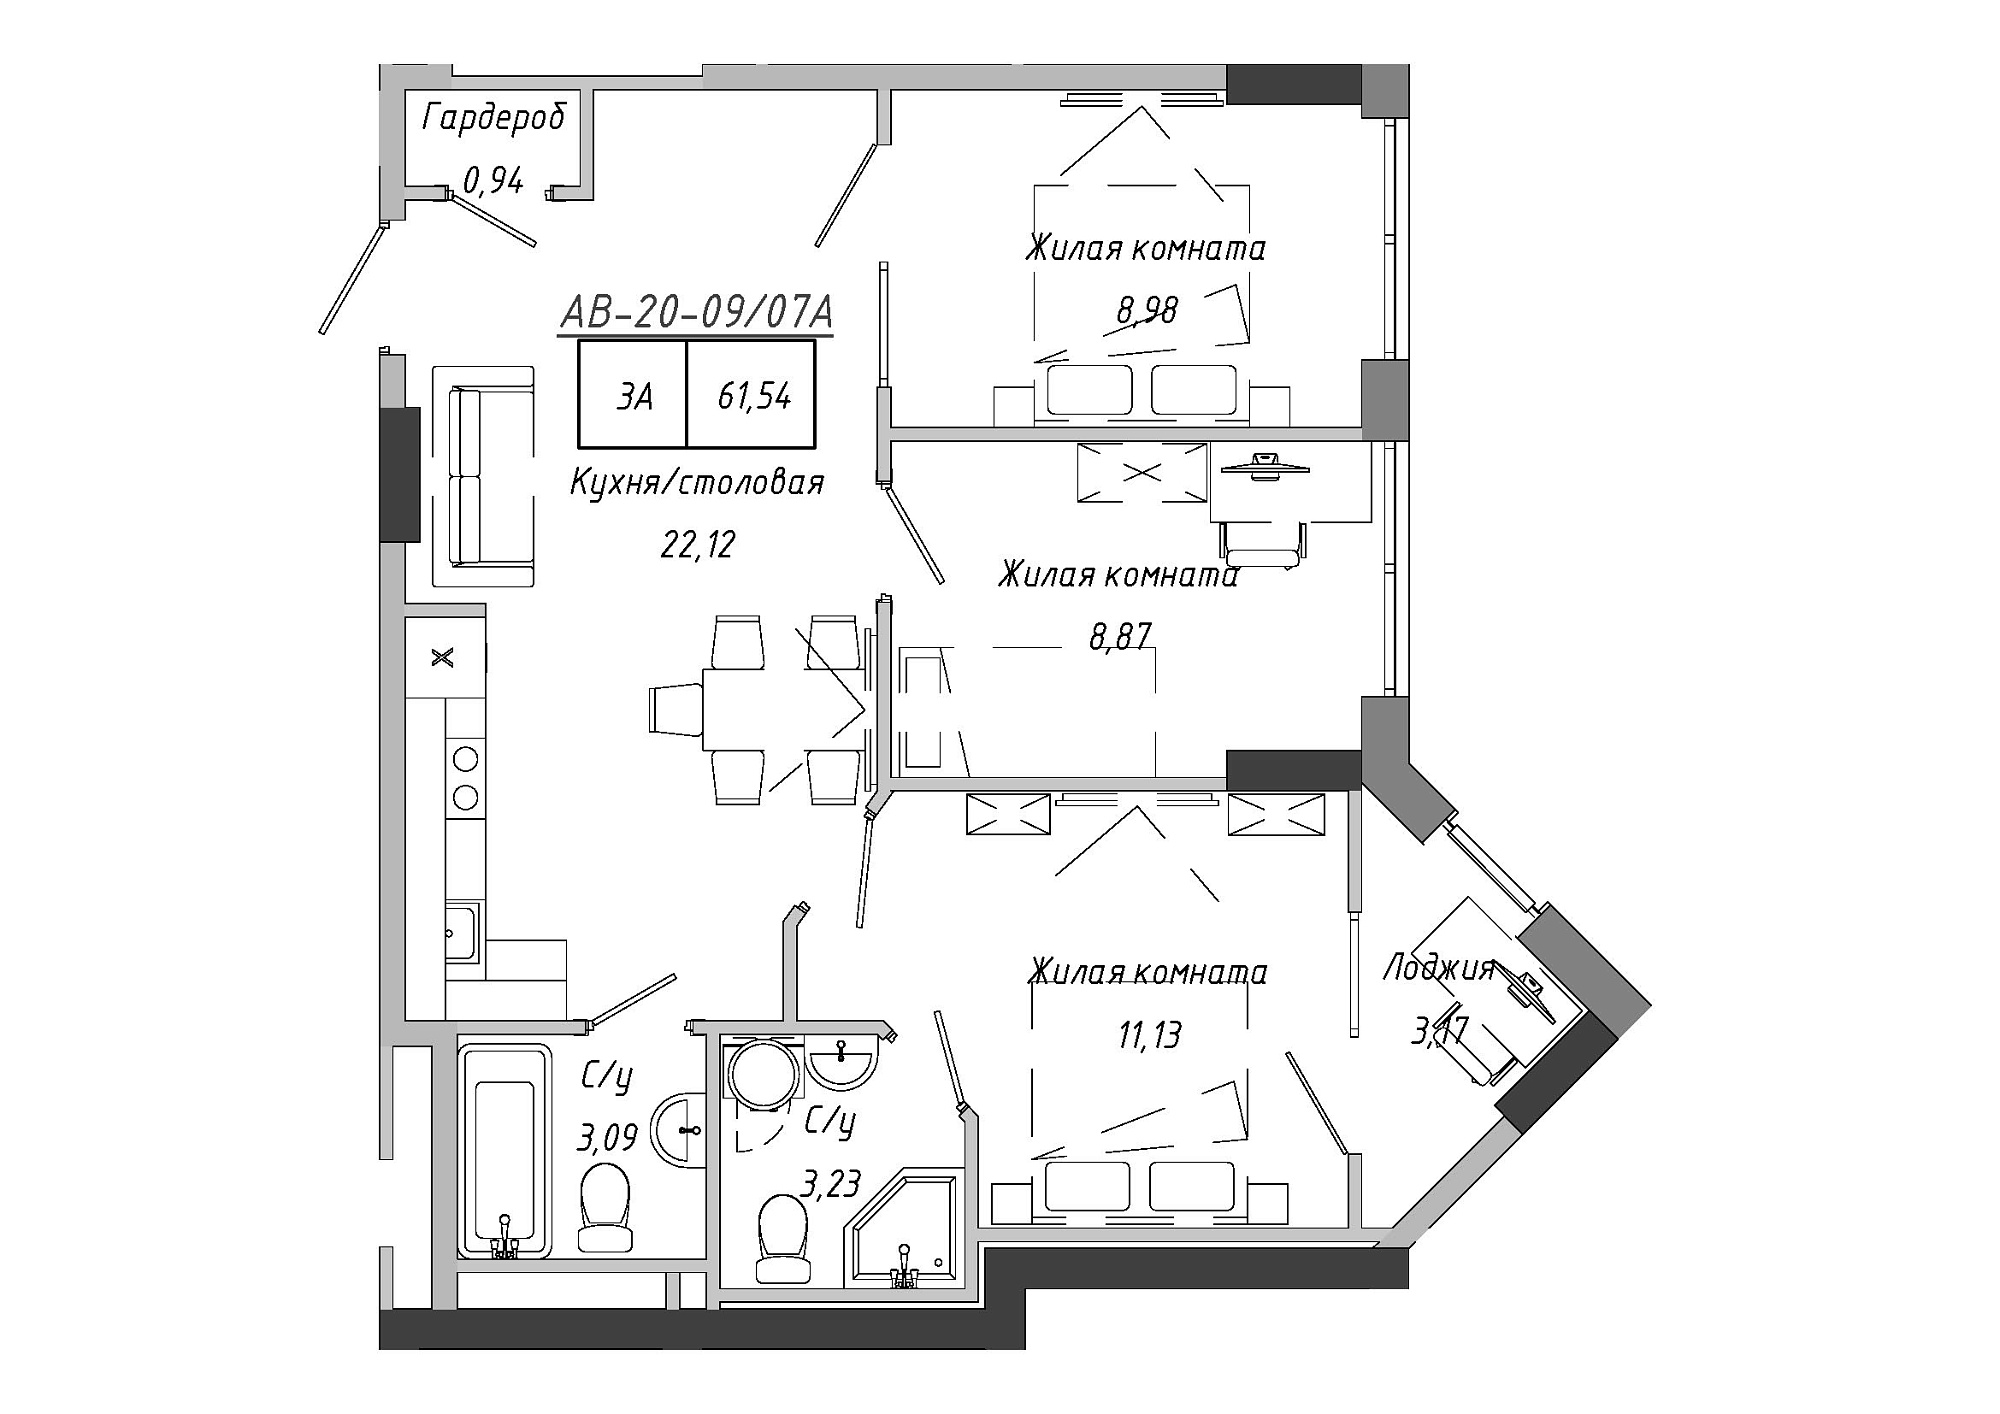 Планування 3-к квартира площею 62.67м2, AB-20-09/0007а.